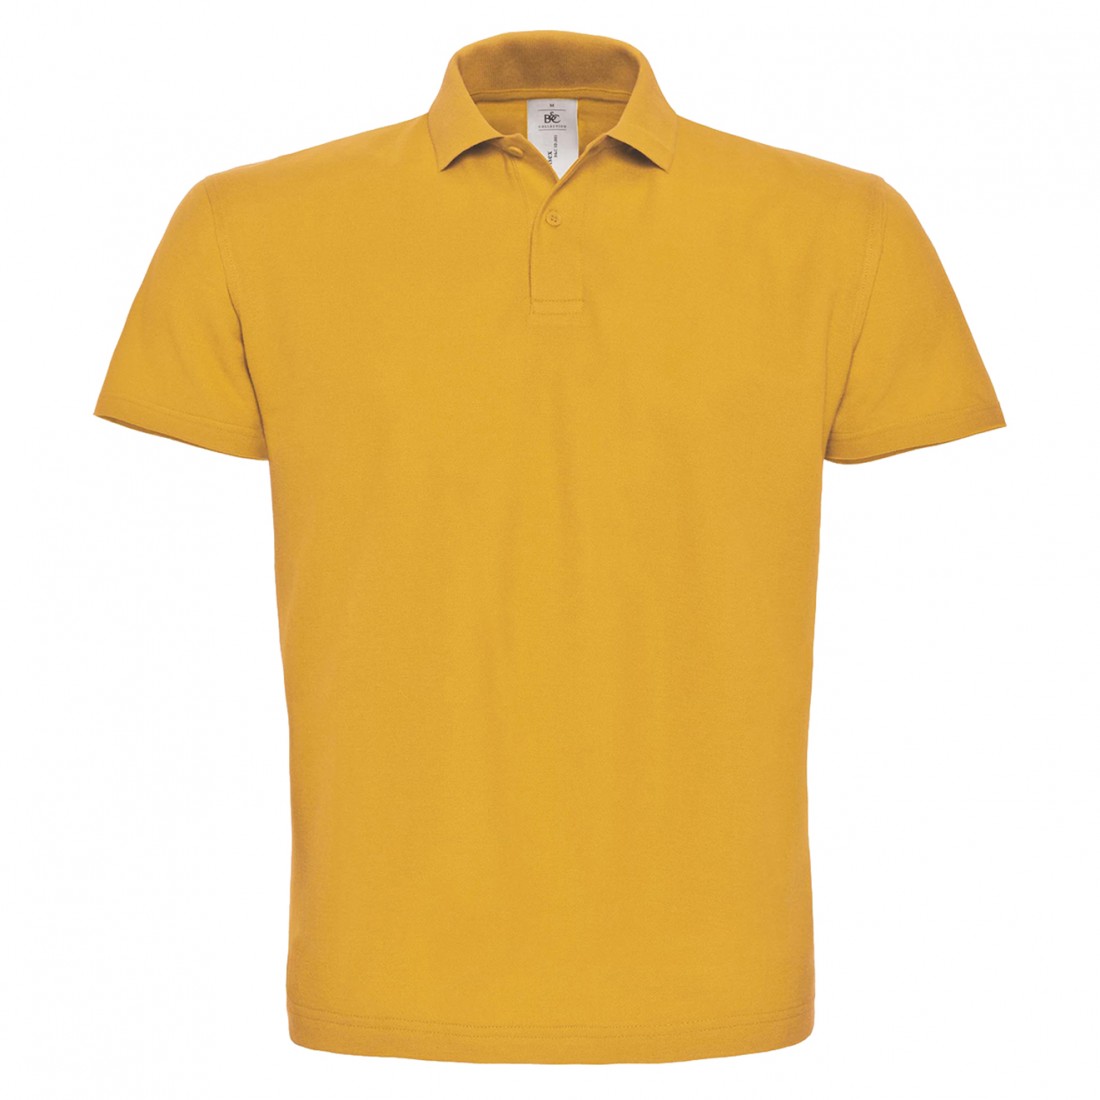 Piqué Polo Shirt - Les vêtements de protection